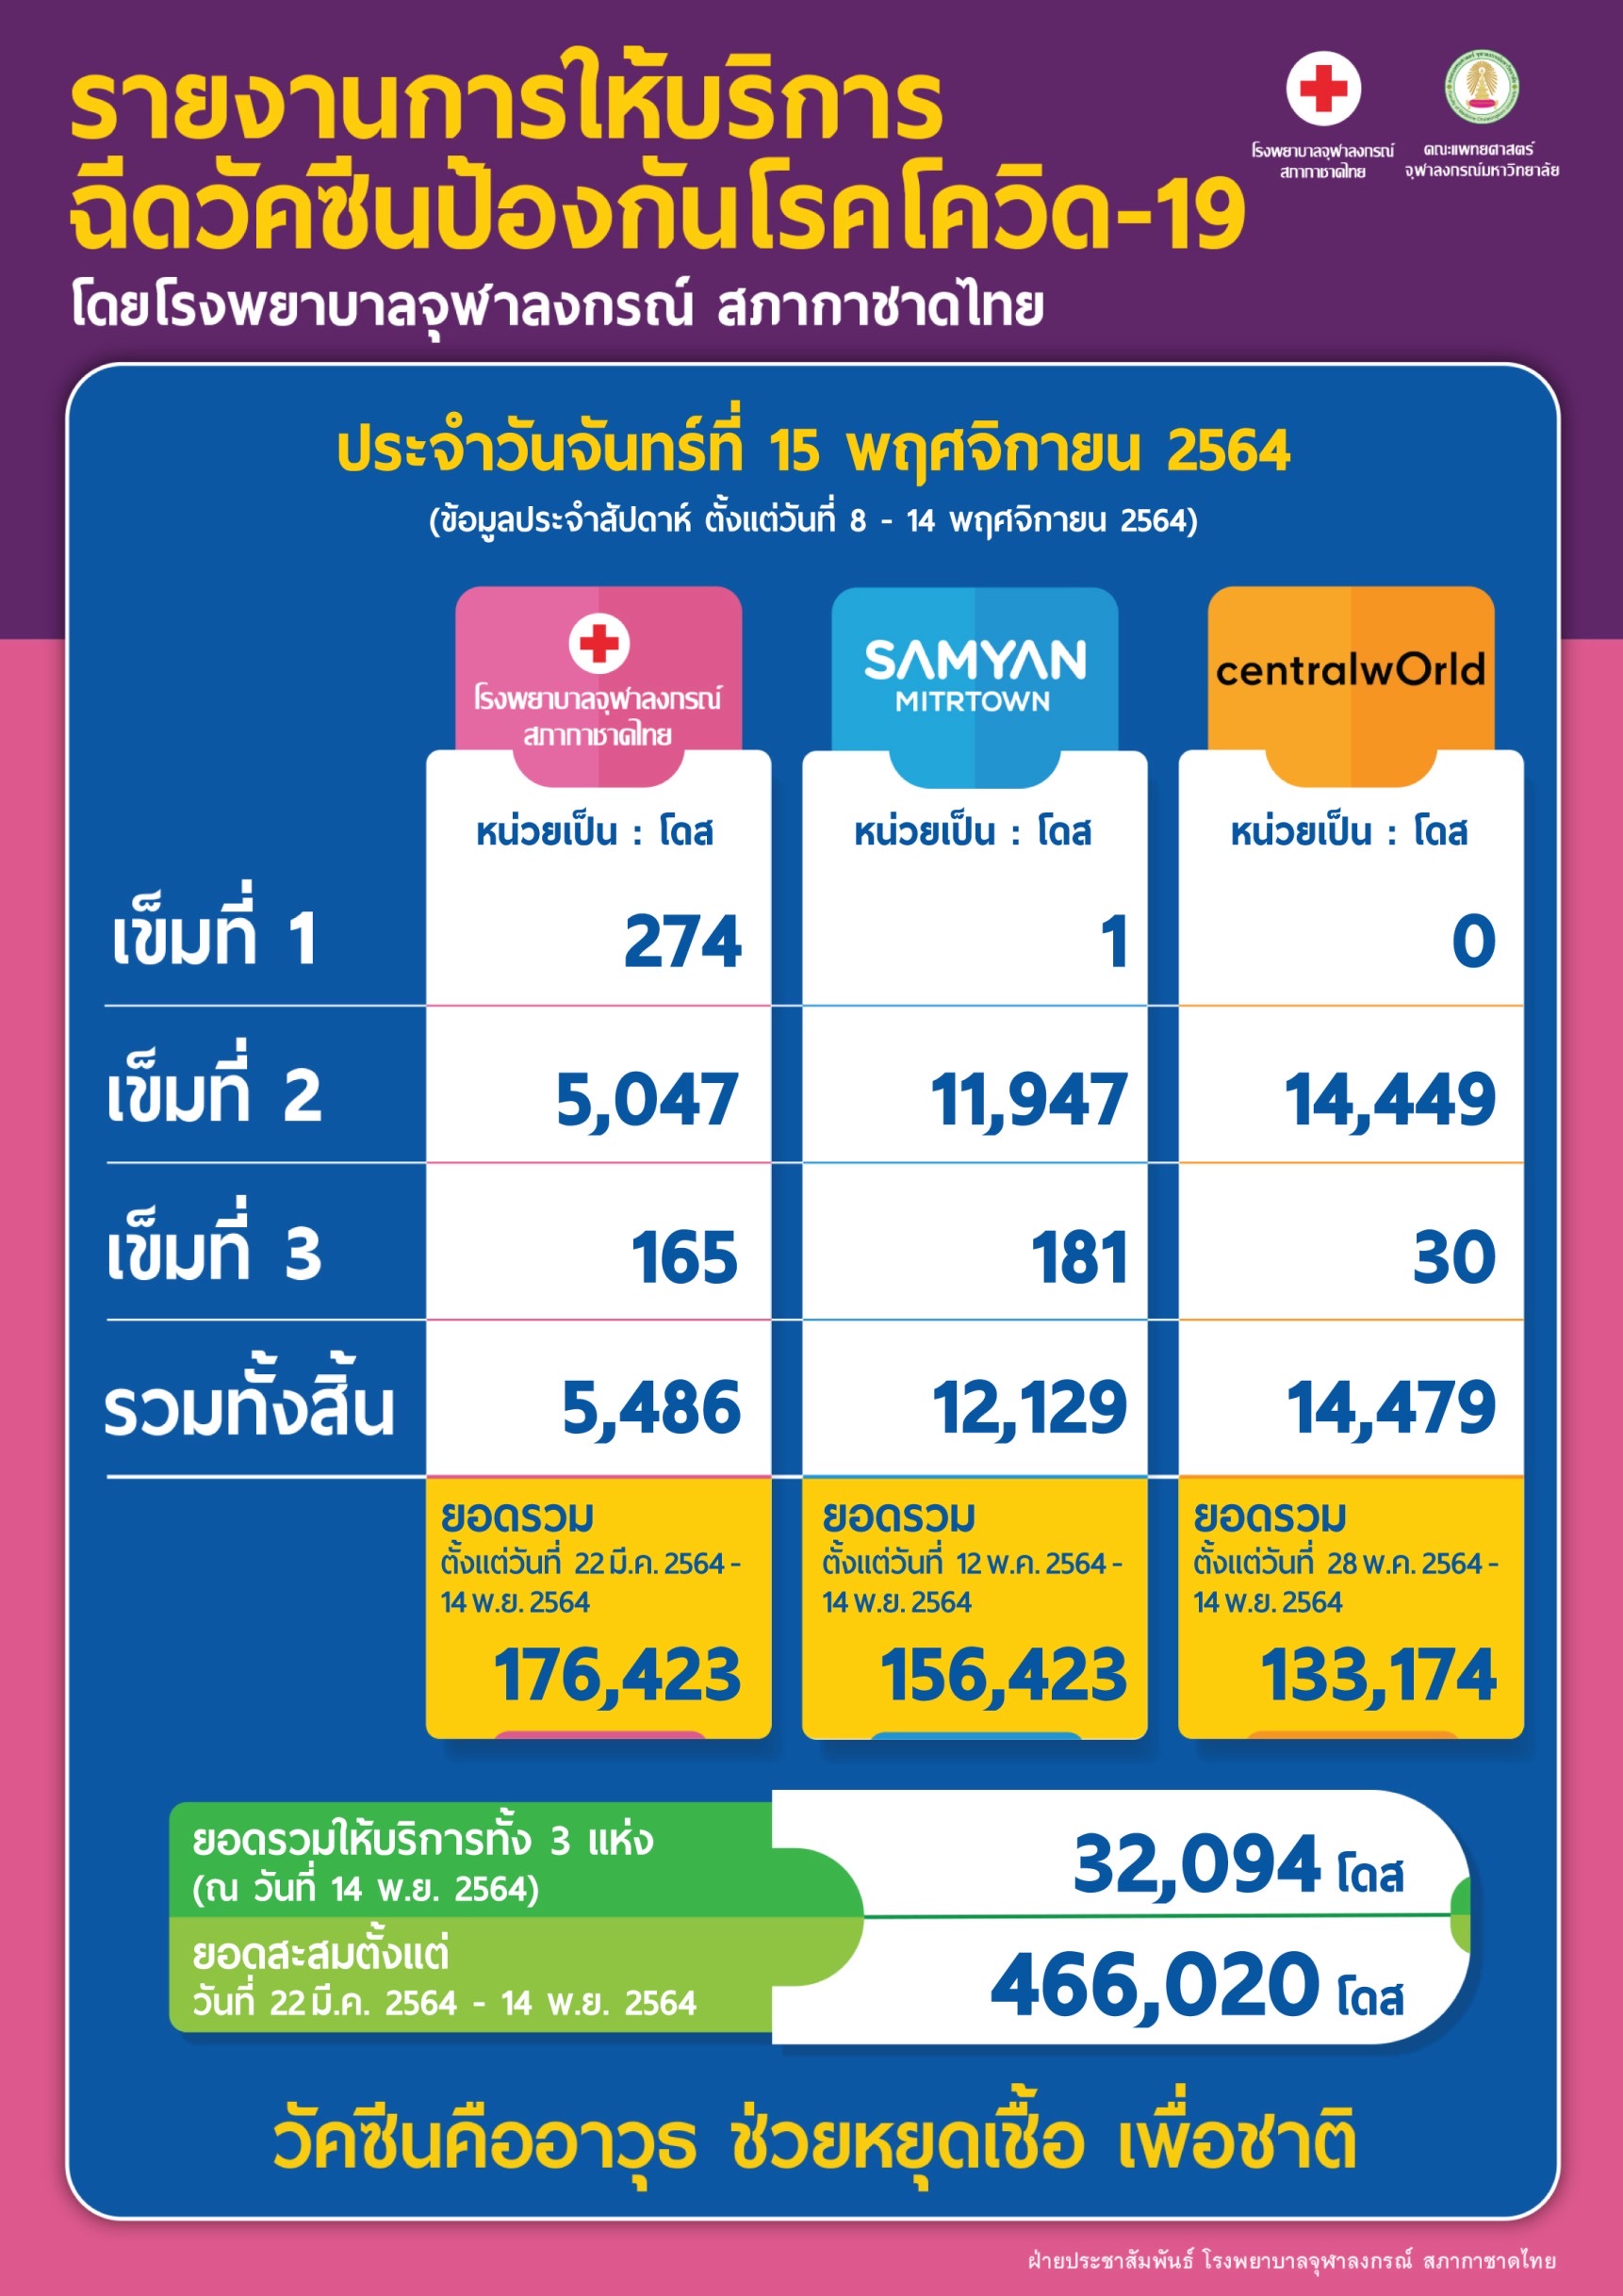 รายงานการให้บริการ ฉีดวัคซีนป้องกันโรคโควิด-19 โดยโรงพยาบาลจุฬาลงกรณ์ สภากาชาดไทย ประจำวันจันทร์ที่ 15 พฤศจิกายน 2564